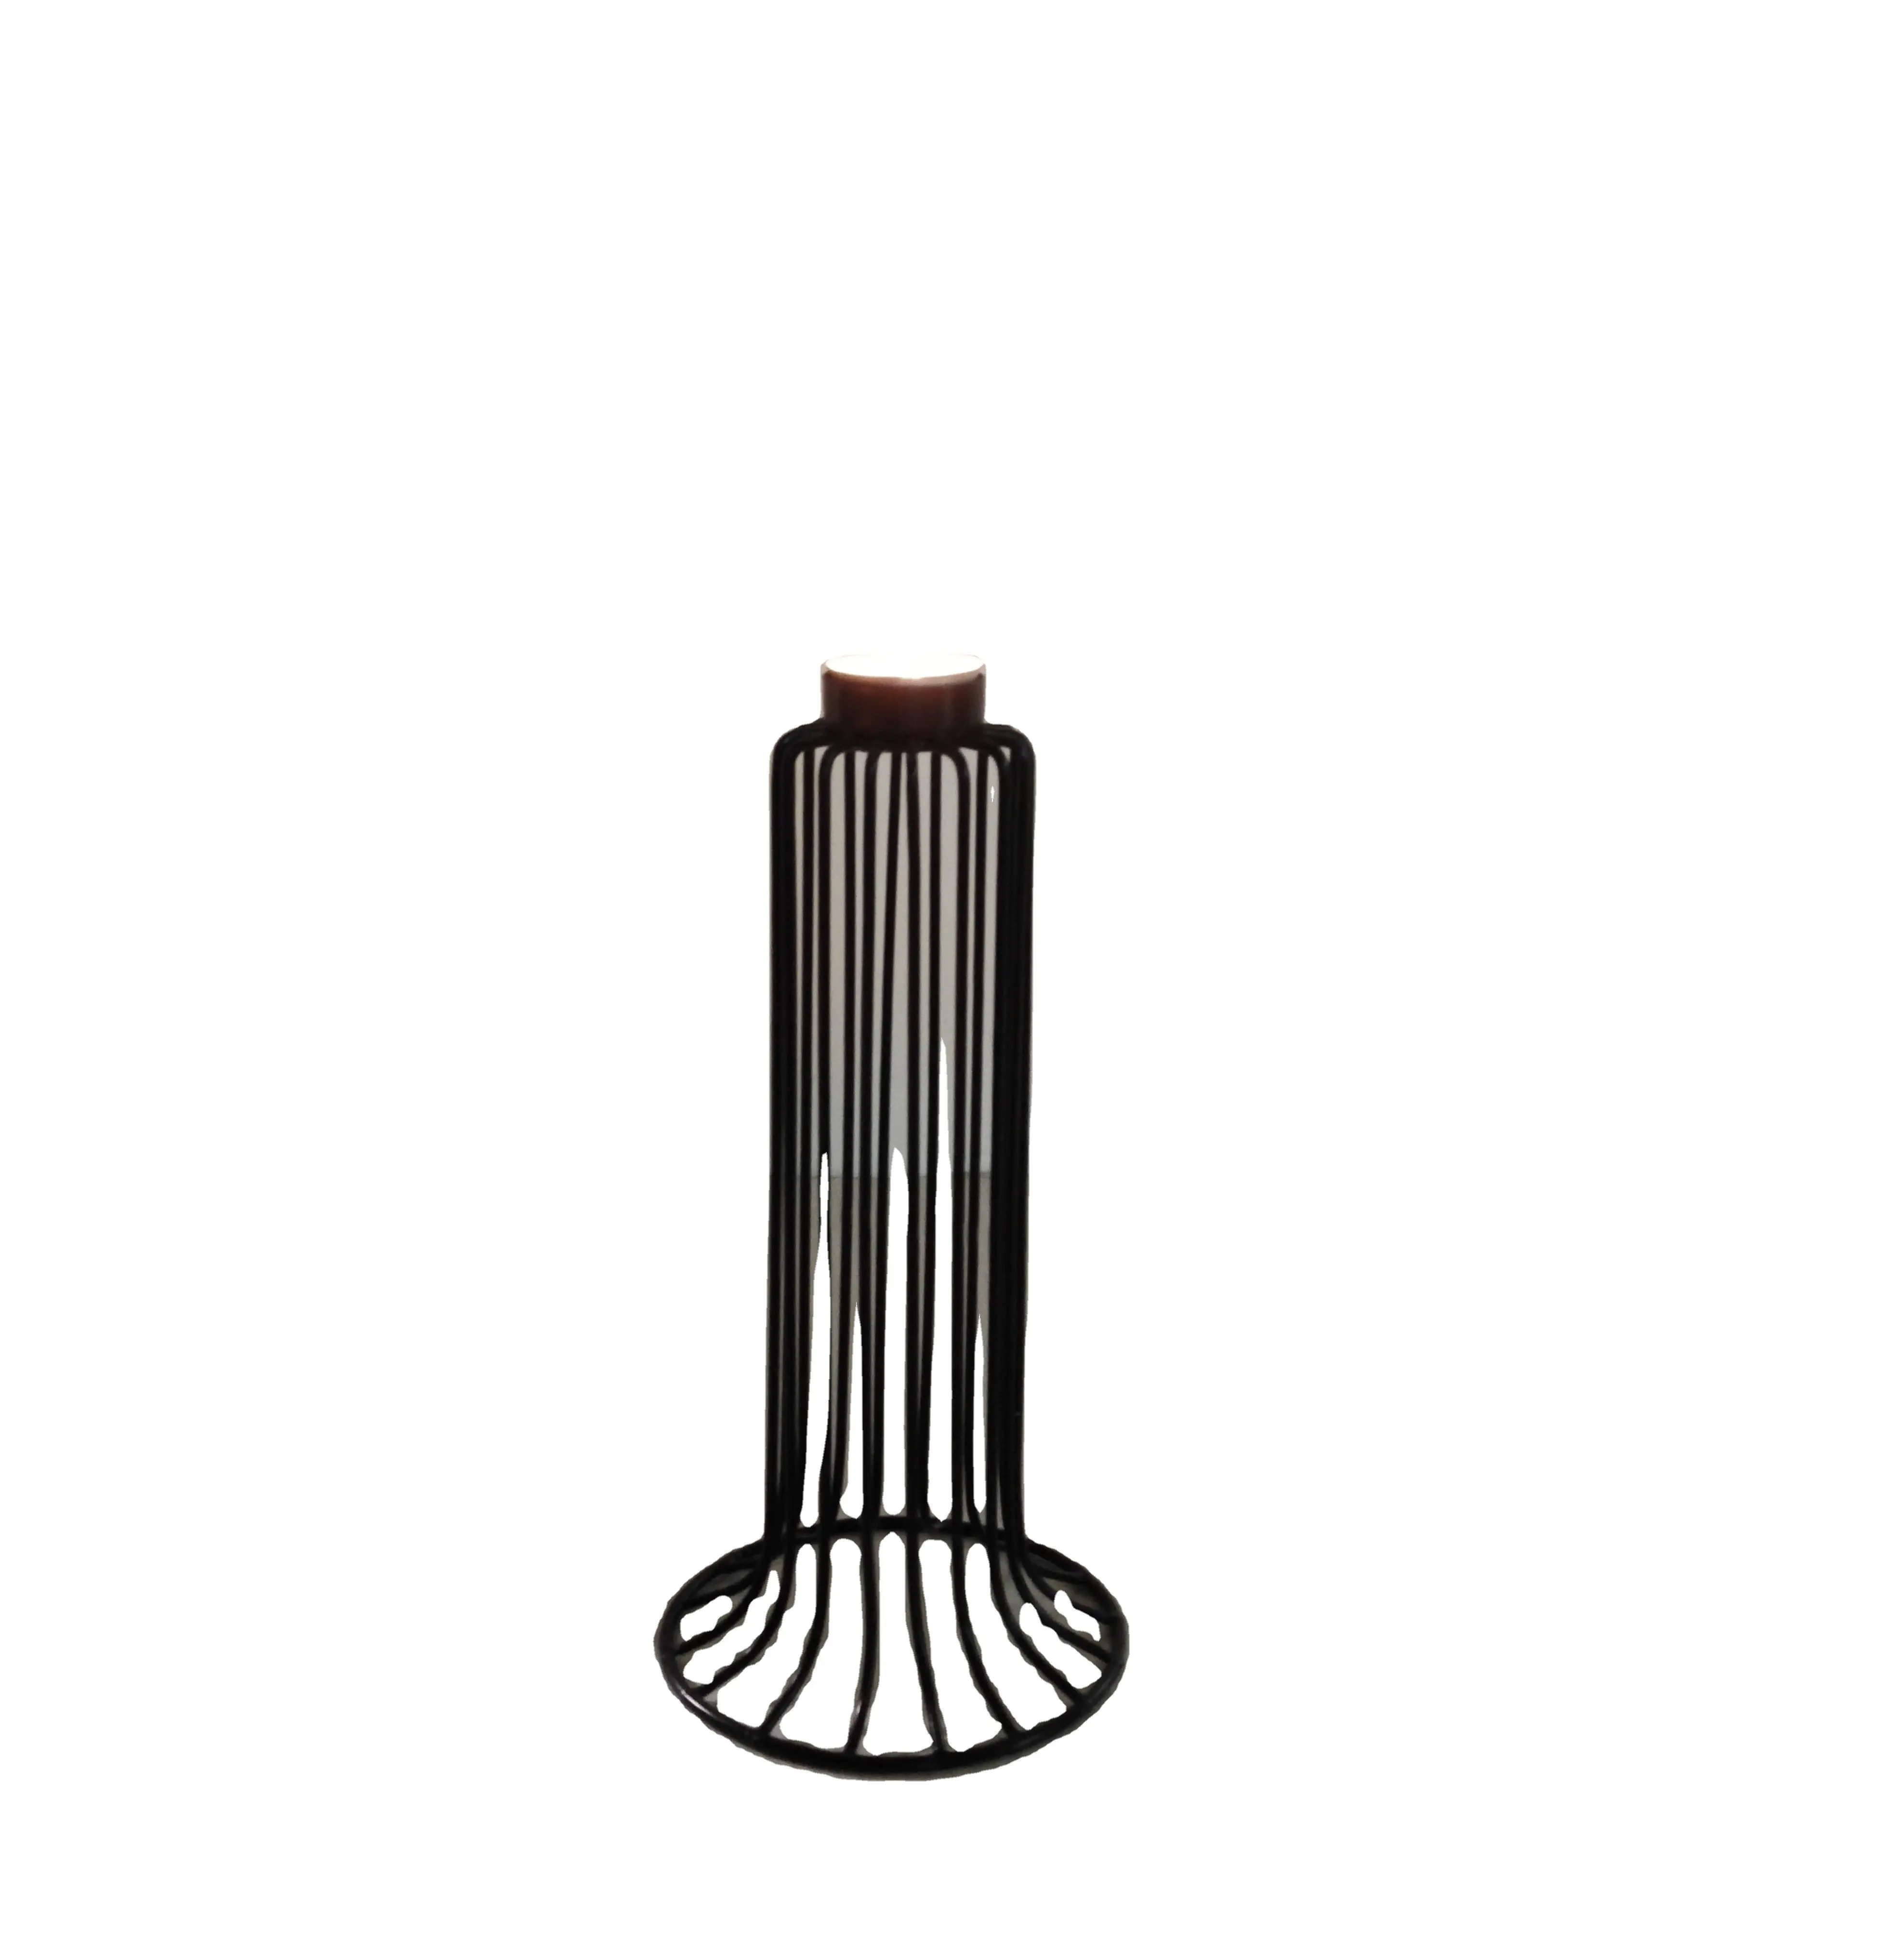 Hot Selling Top ausgefallenen Kerzenhalter und T-Licht halter Schwarz in Metall kerze innen für die Beleuchtung Tisch dekoration